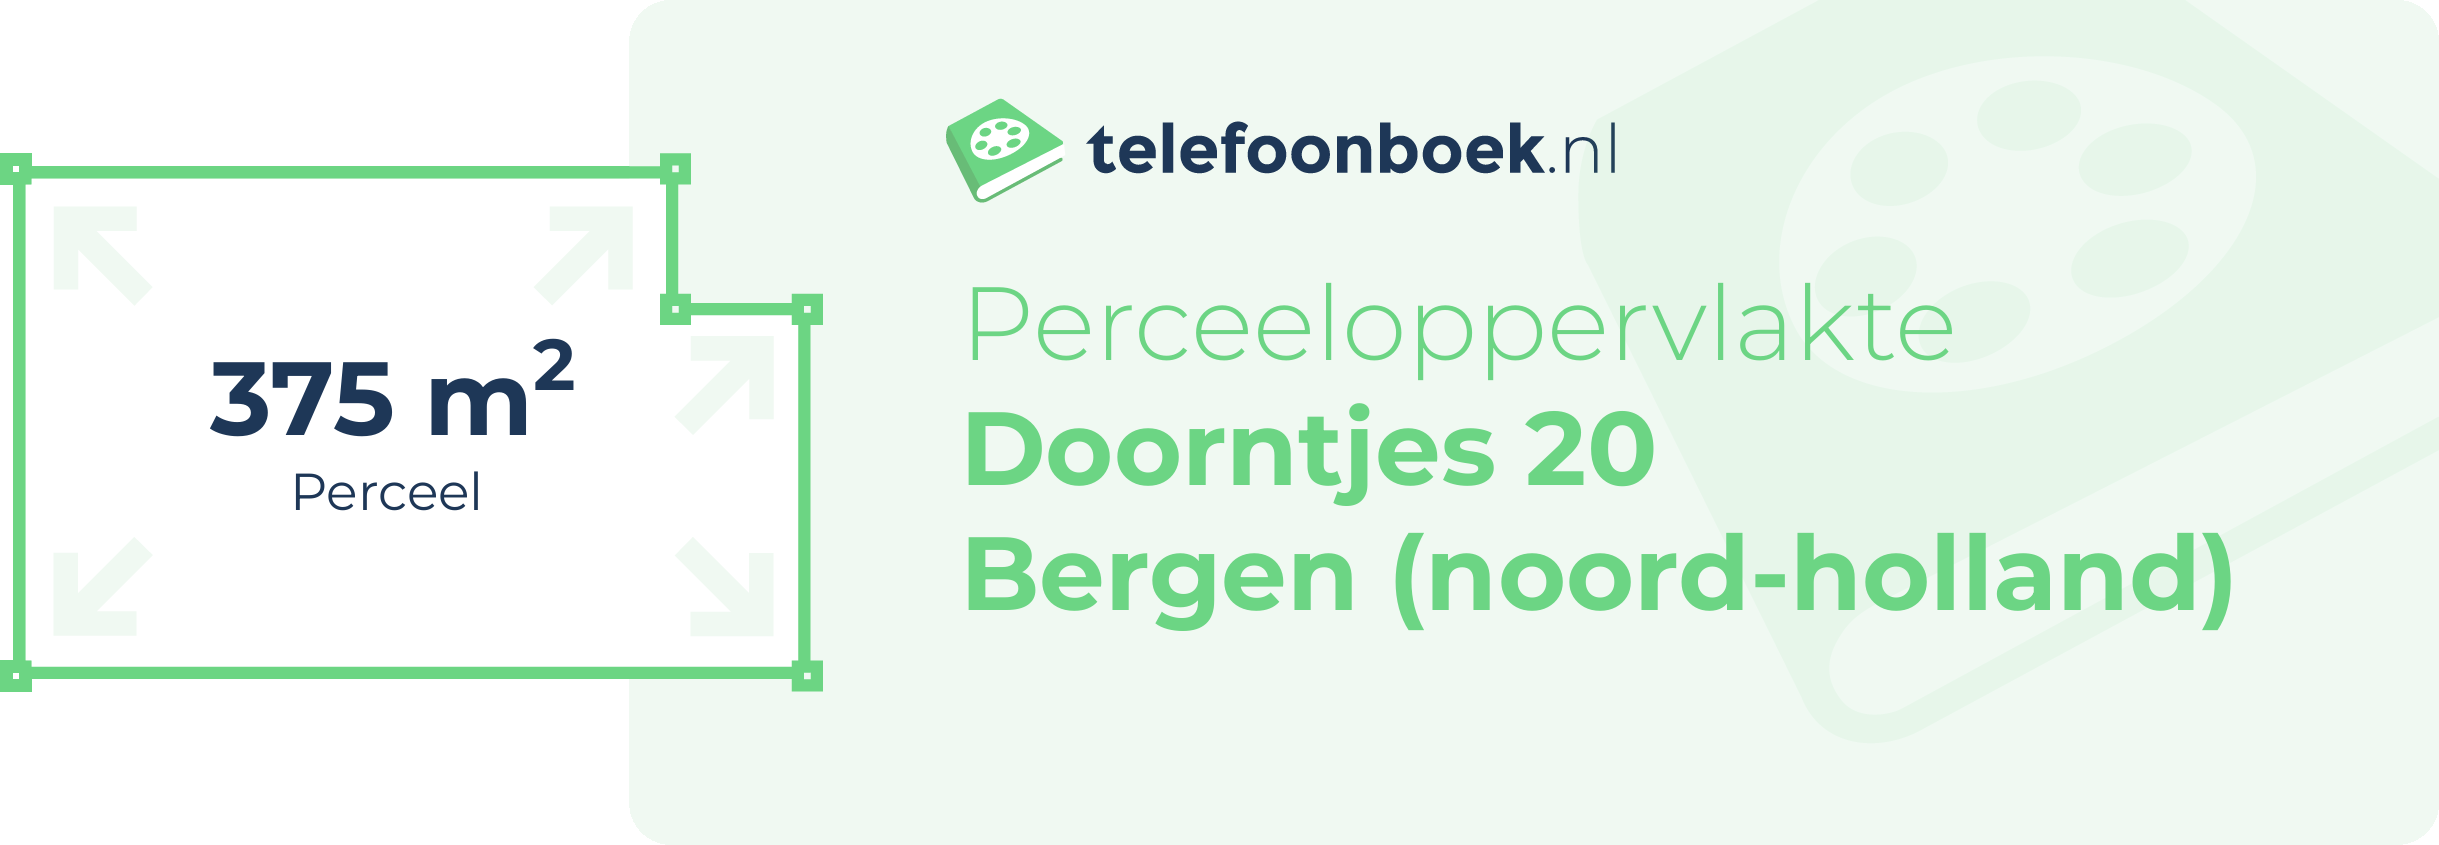 Perceeloppervlakte Doorntjes 20 Bergen (Noord-Holland)